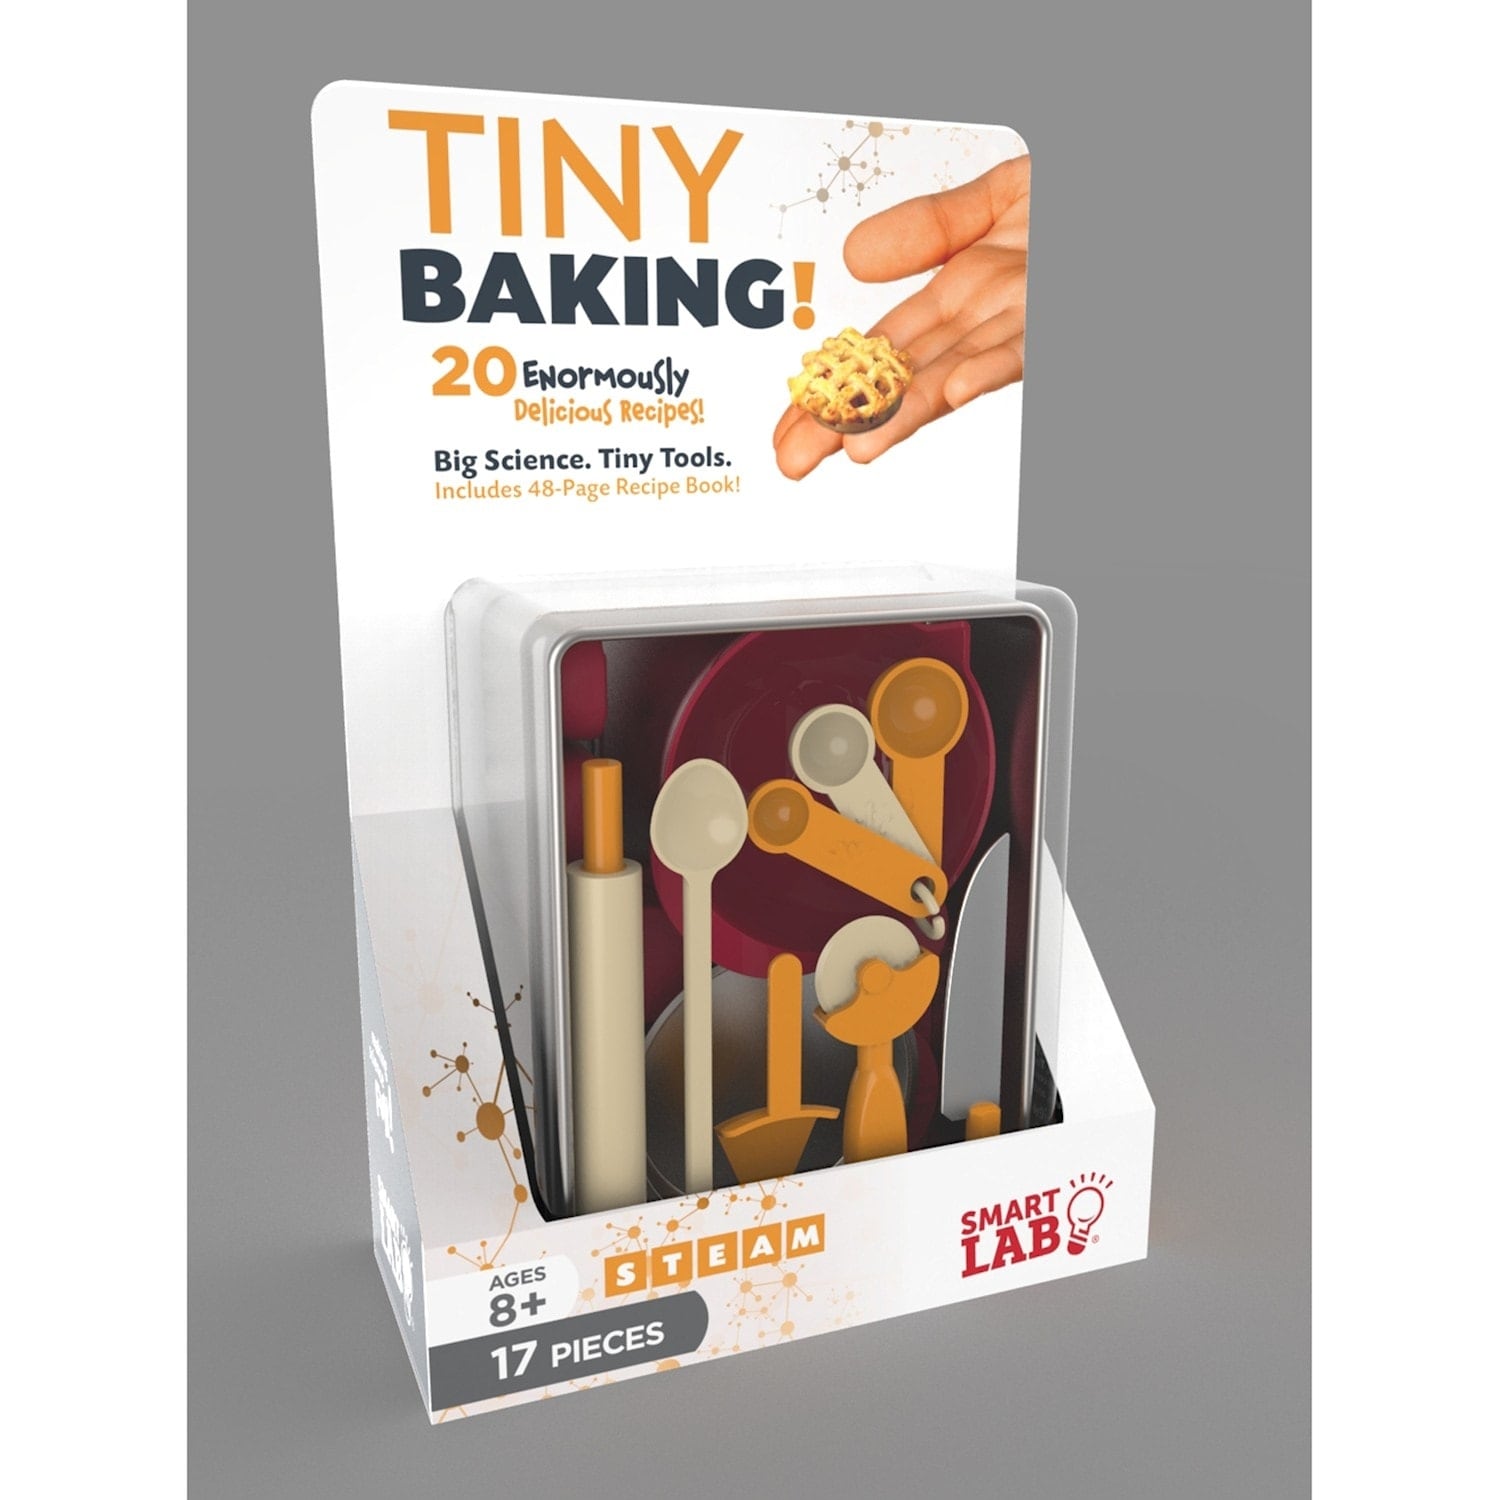 Tiny Baking! by